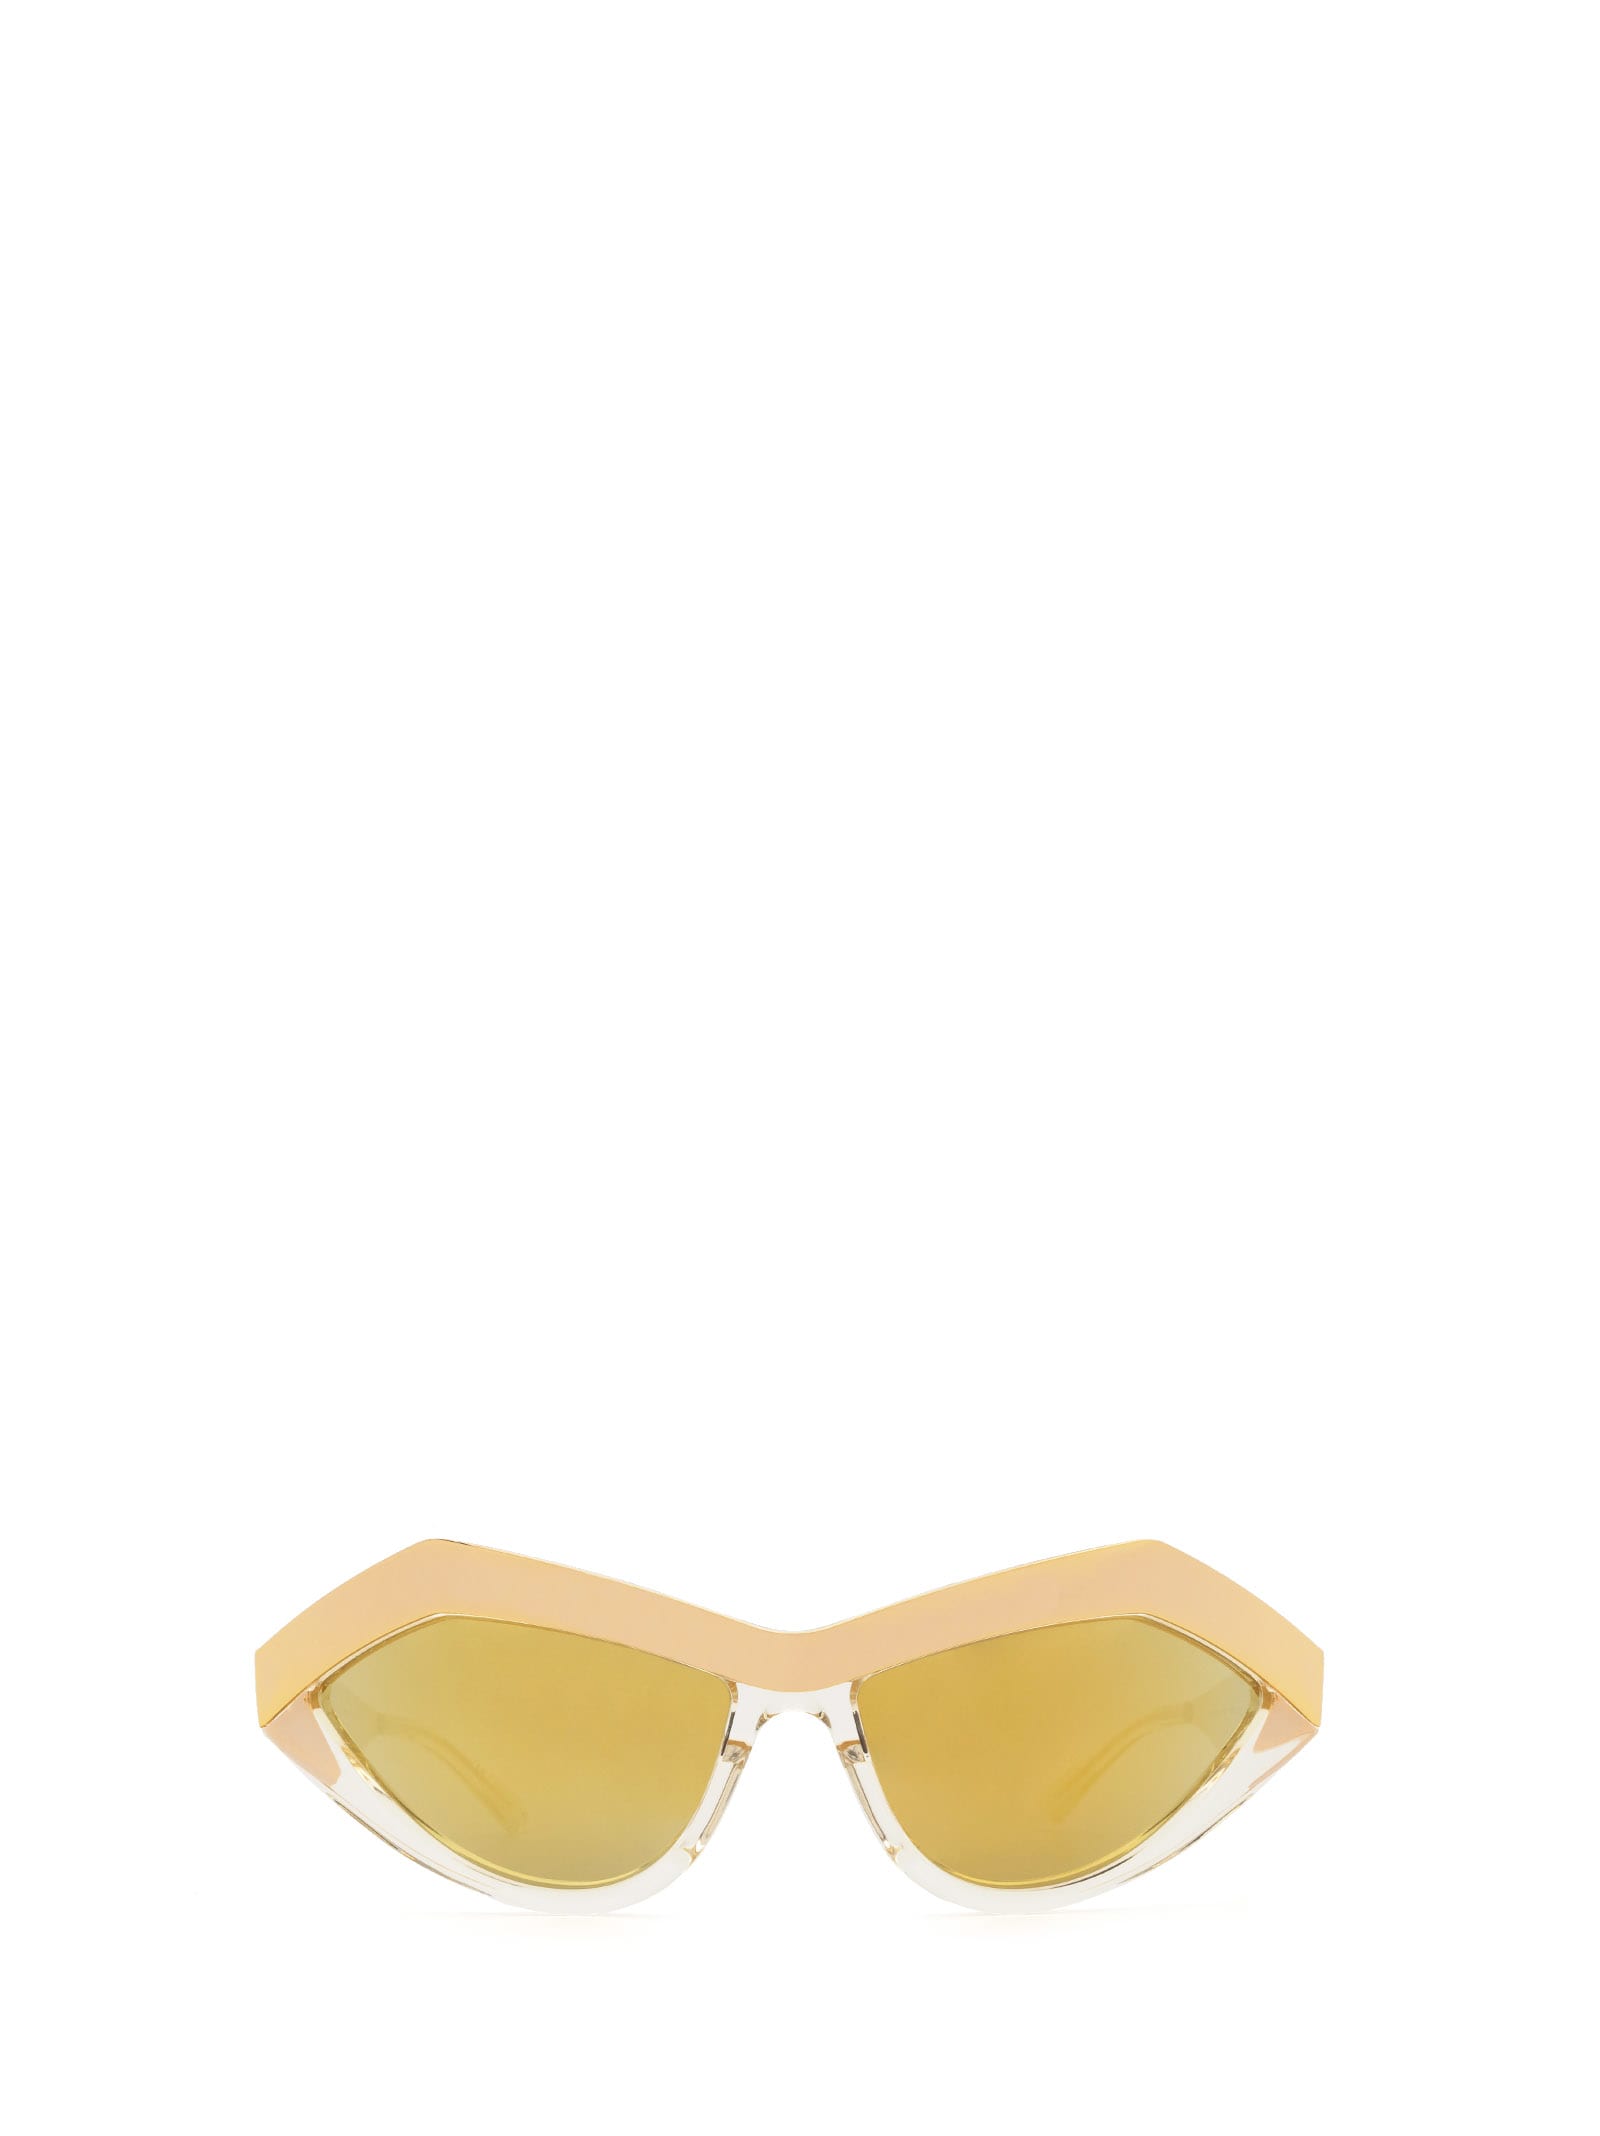 Bottega Veneta Bottega Veneta Bv1055s Gold Sunglasses